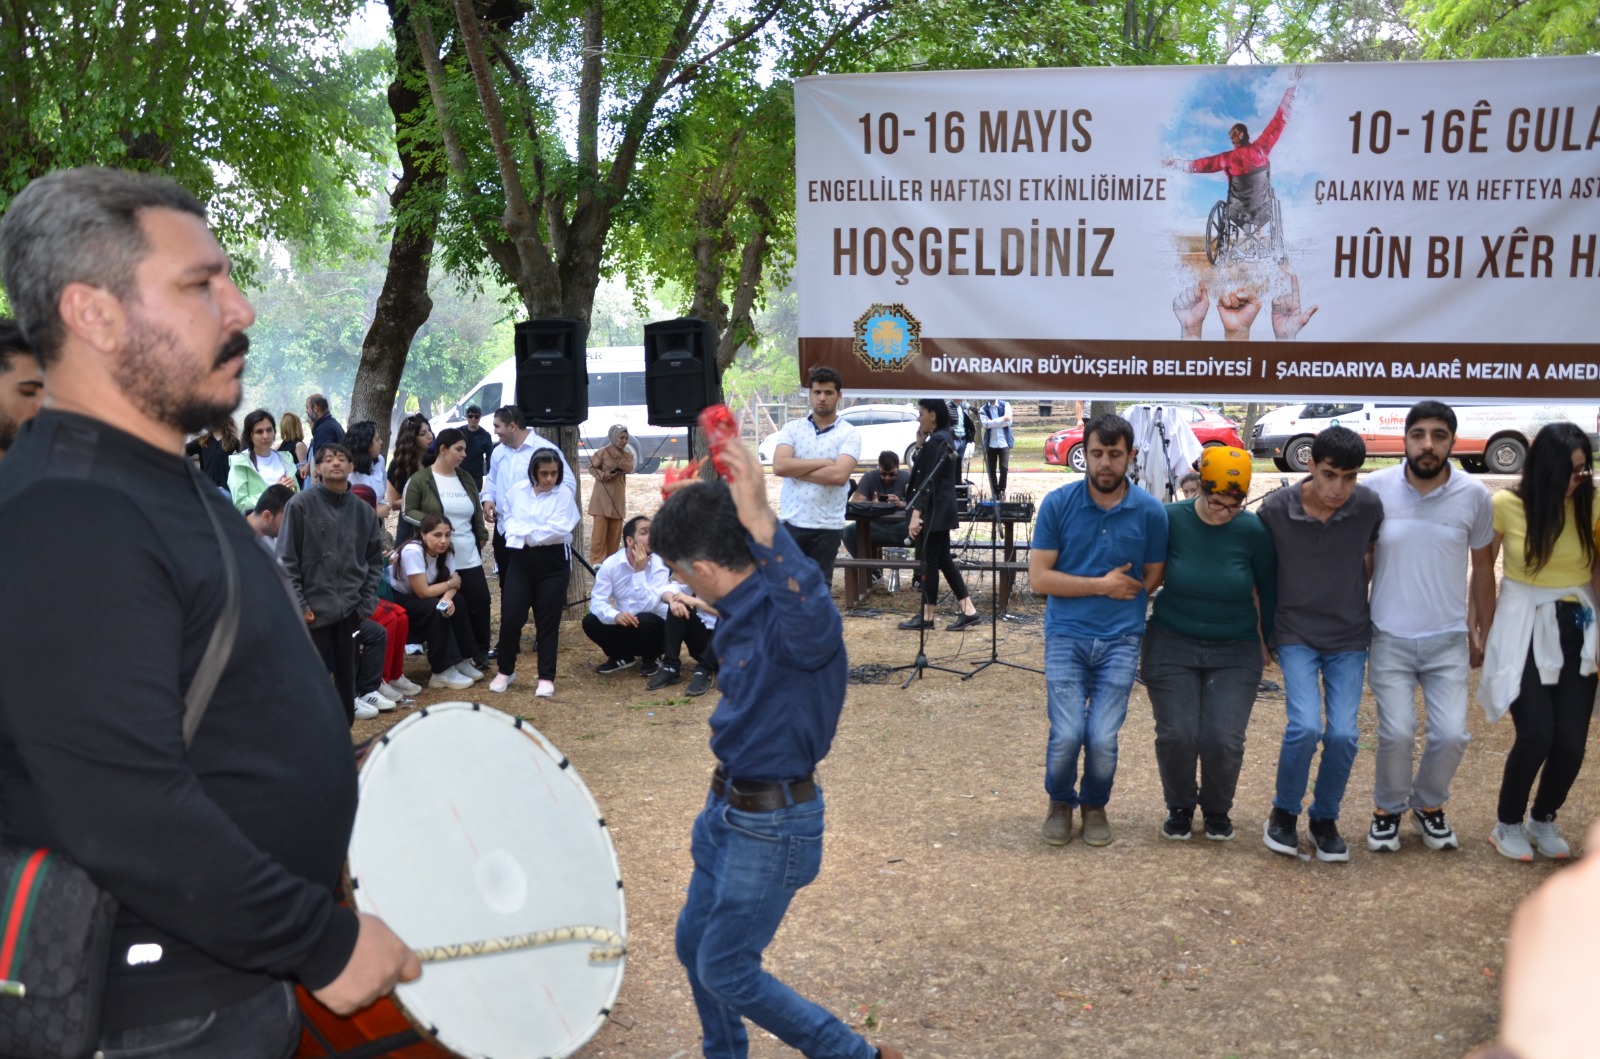 Diyarbakır’da Engelliler Haftasında renkli etkinlikler